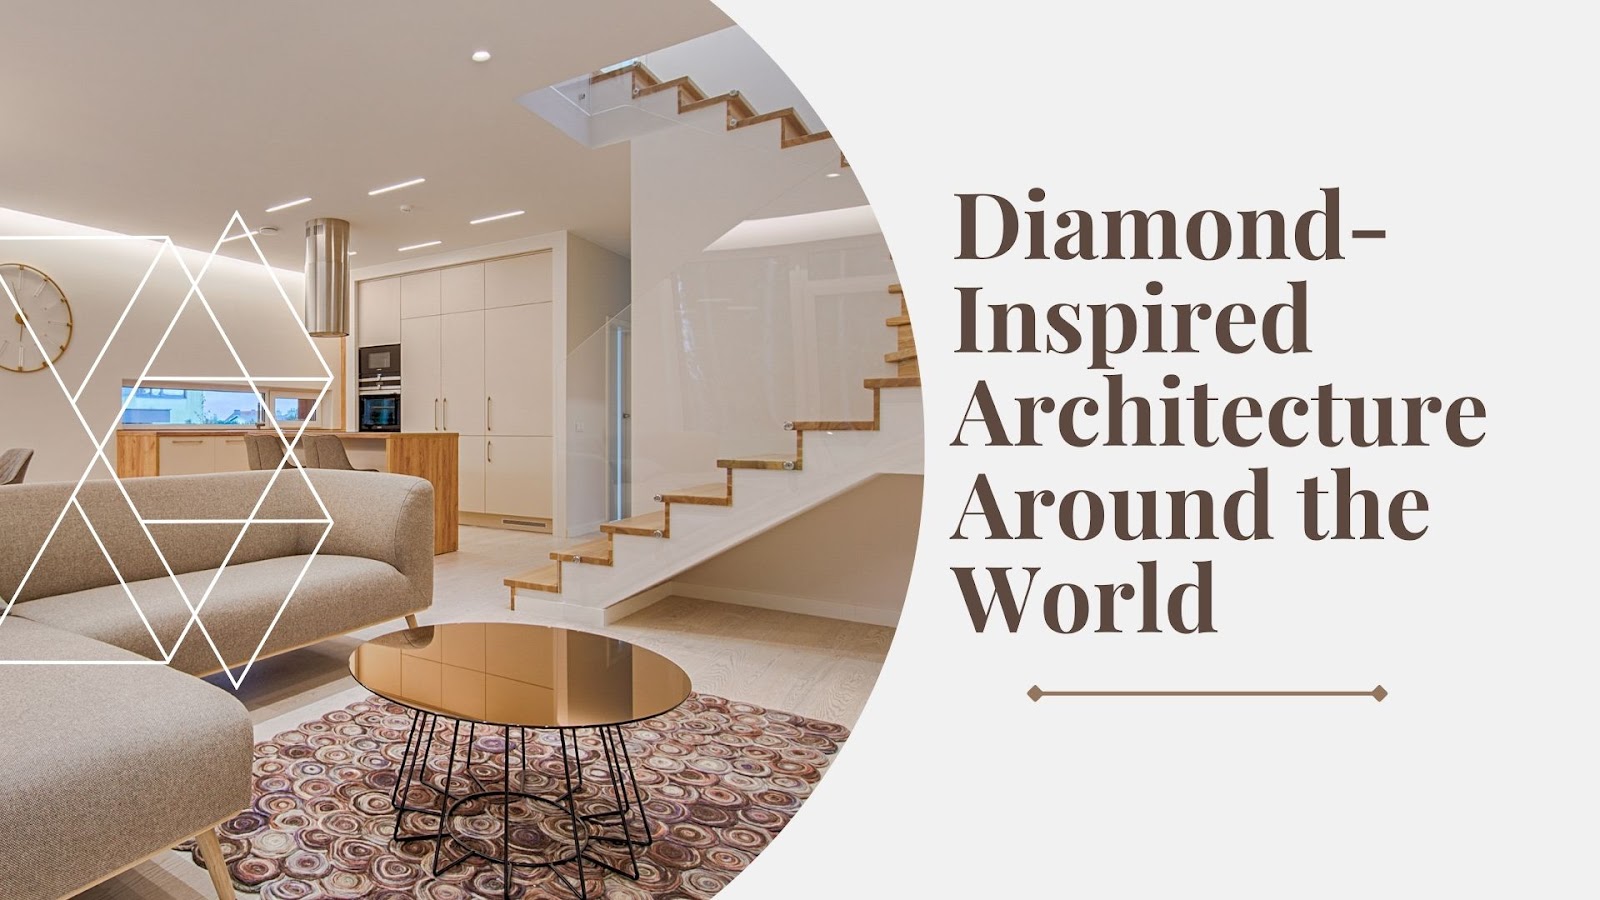 Diamond-Inspired Architecture Around the World